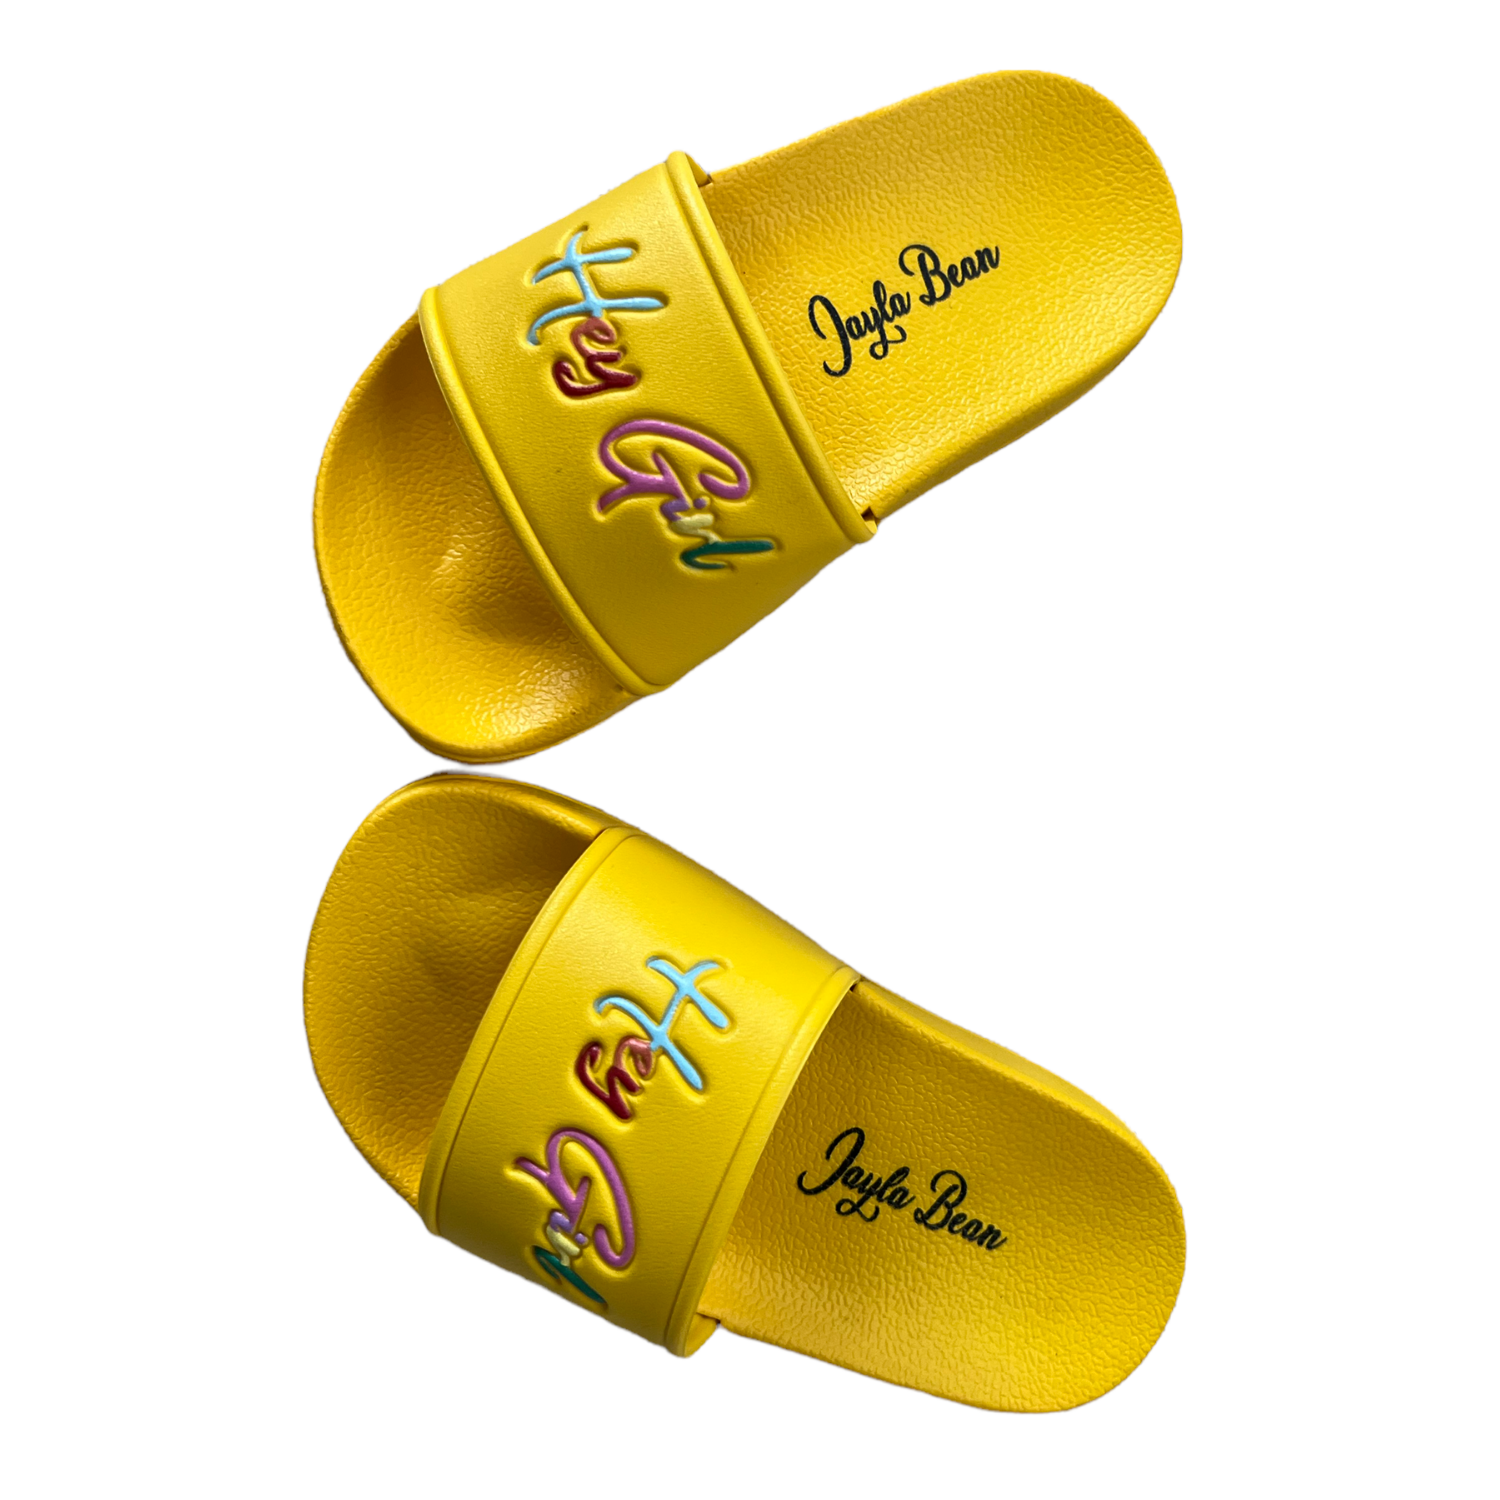 Jayla Bean “Hey Girl” Yellow Slides